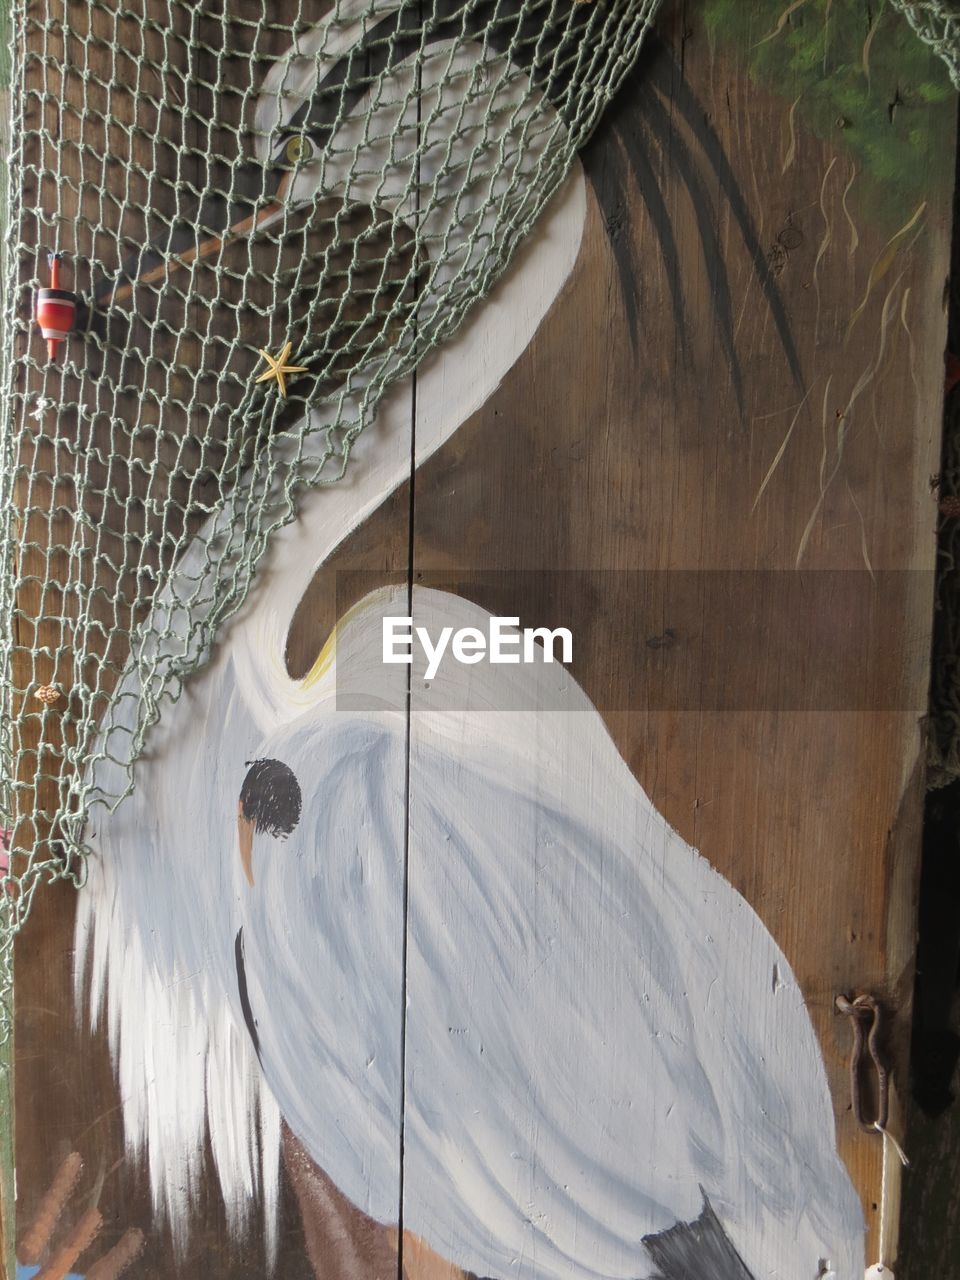 Heron painting on door